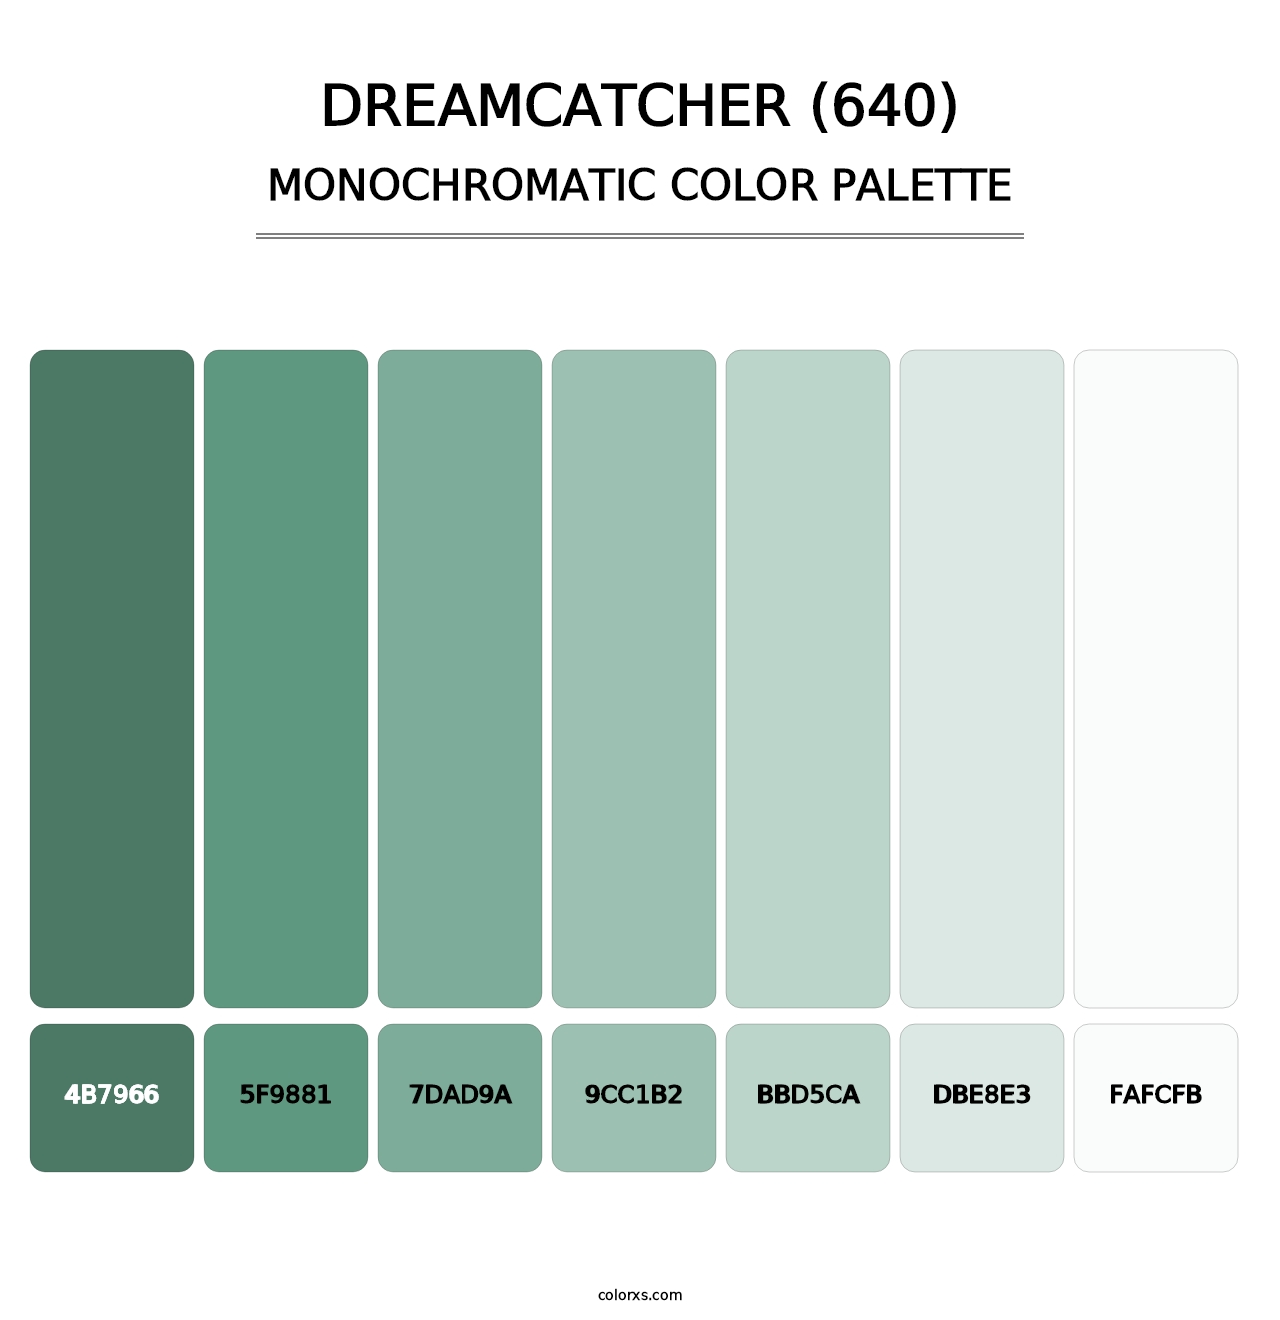 Dreamcatcher (640) - Monochromatic Color Palette